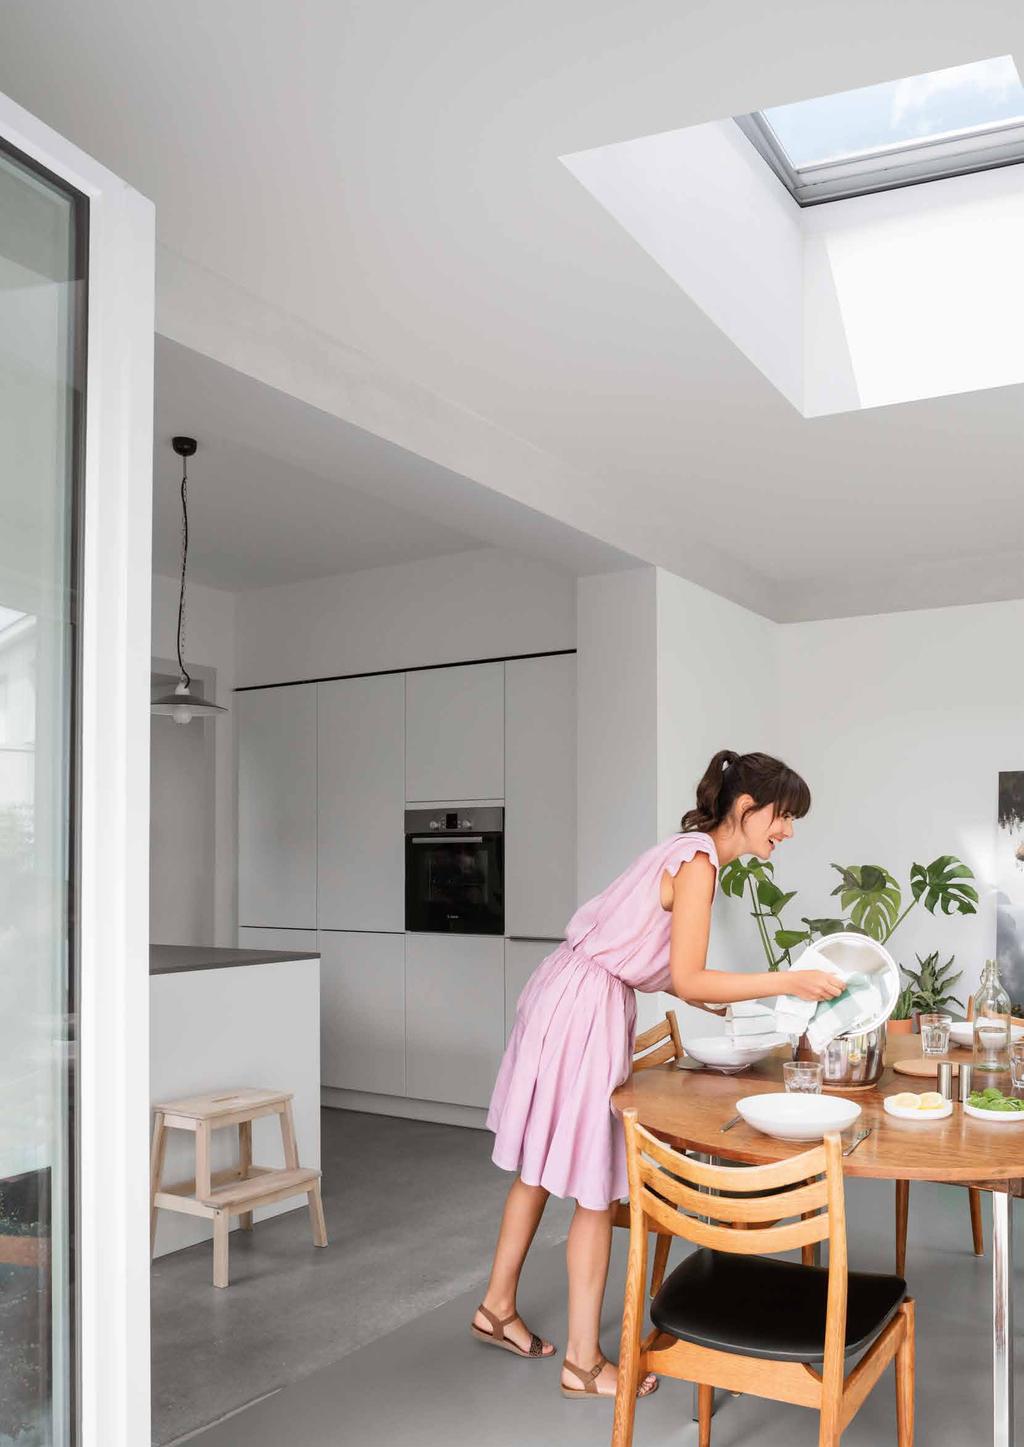 Nowa jakość w płaskim dachu Teraz Twój dach może się otworzyć na naturalne światło i świeże powietrze Okno VELUX do dachu płaskiego jest doskonałym sposobem na wpuszczenie naturalnego światła i